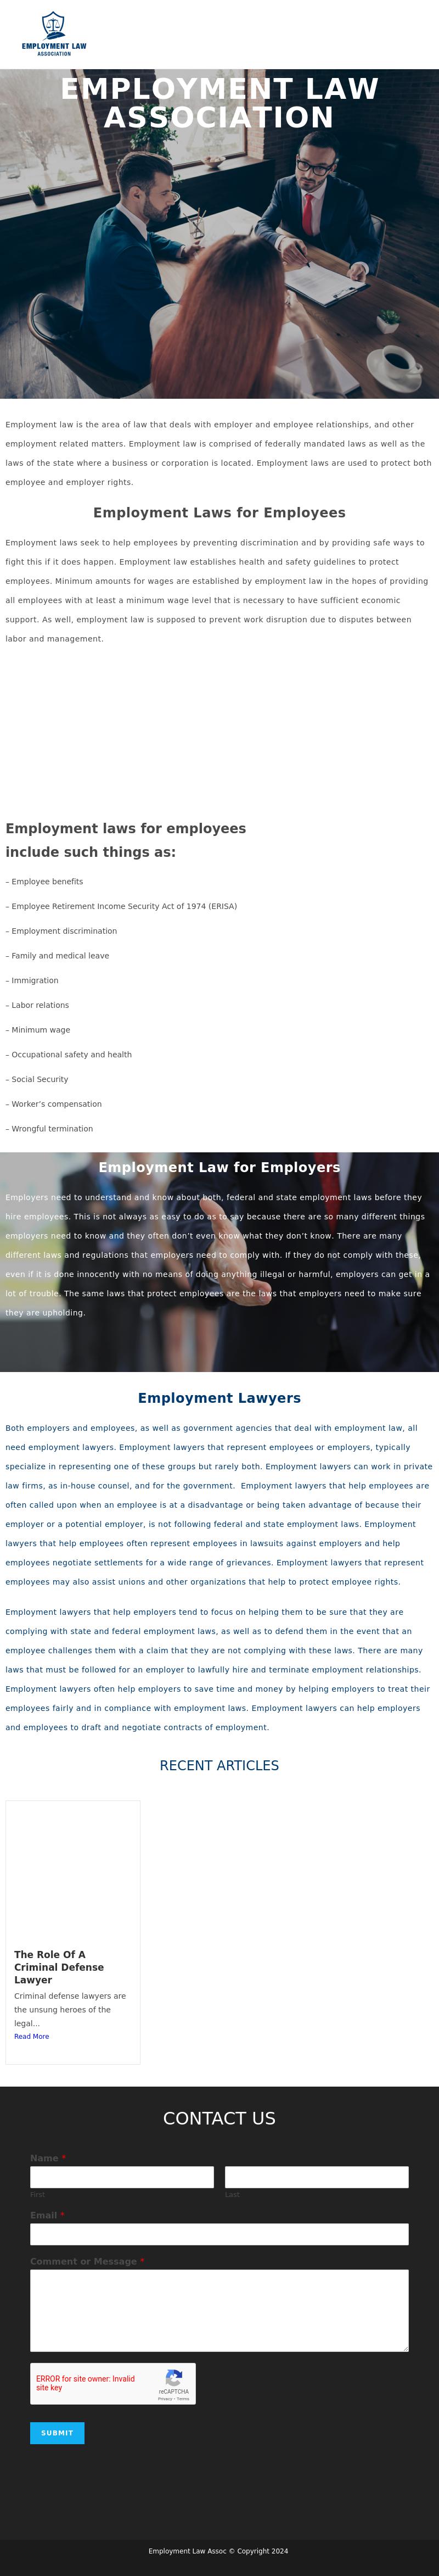 Employment Law Associates - Salem MA Lawyers